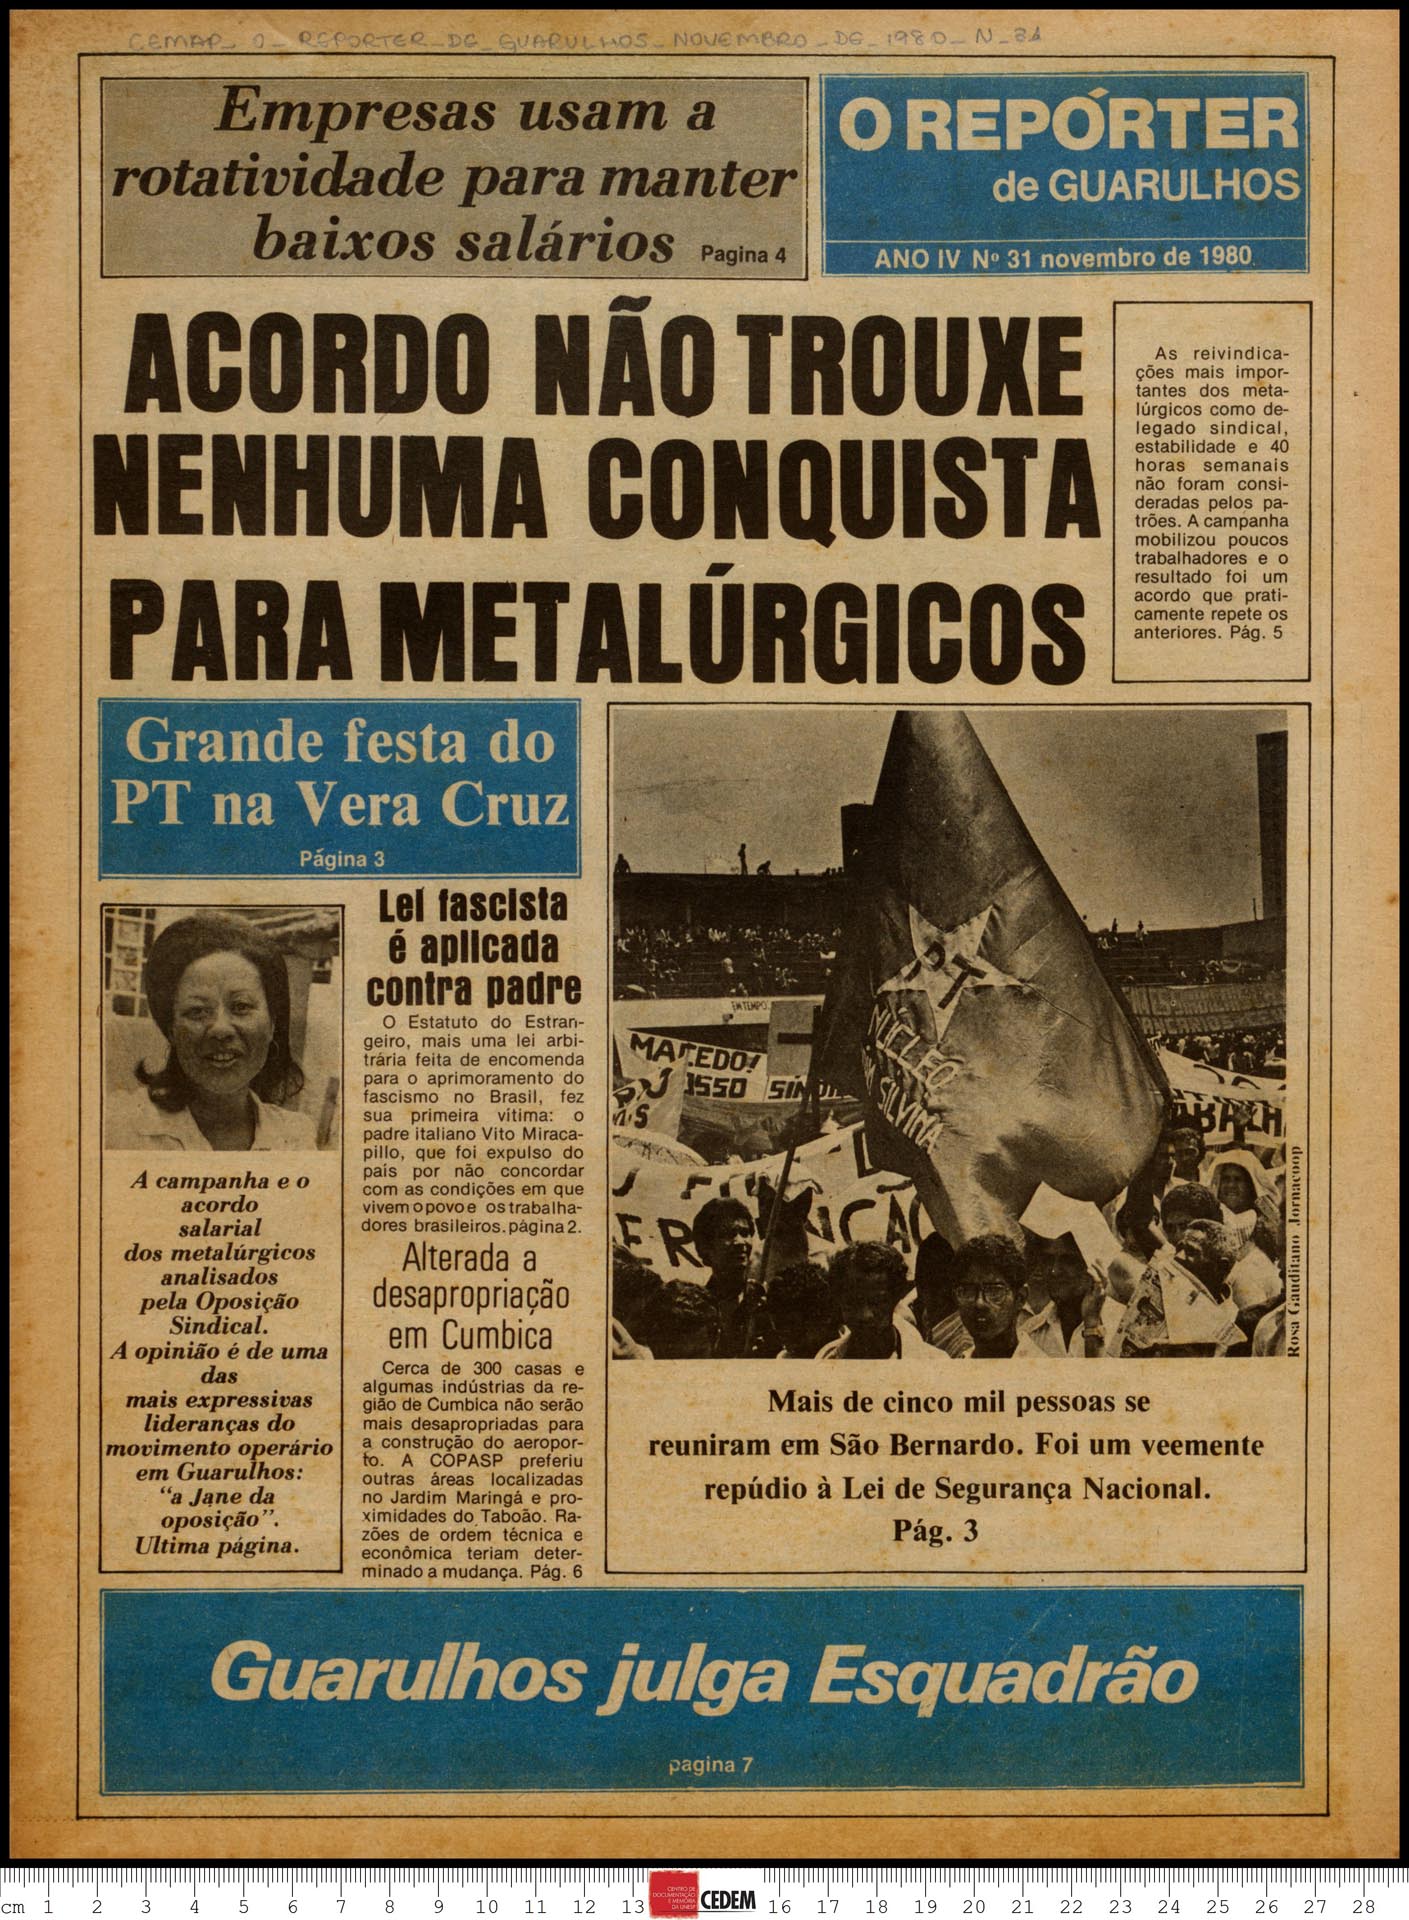 O reportér de Guarulhos - 31 - nov. 1980